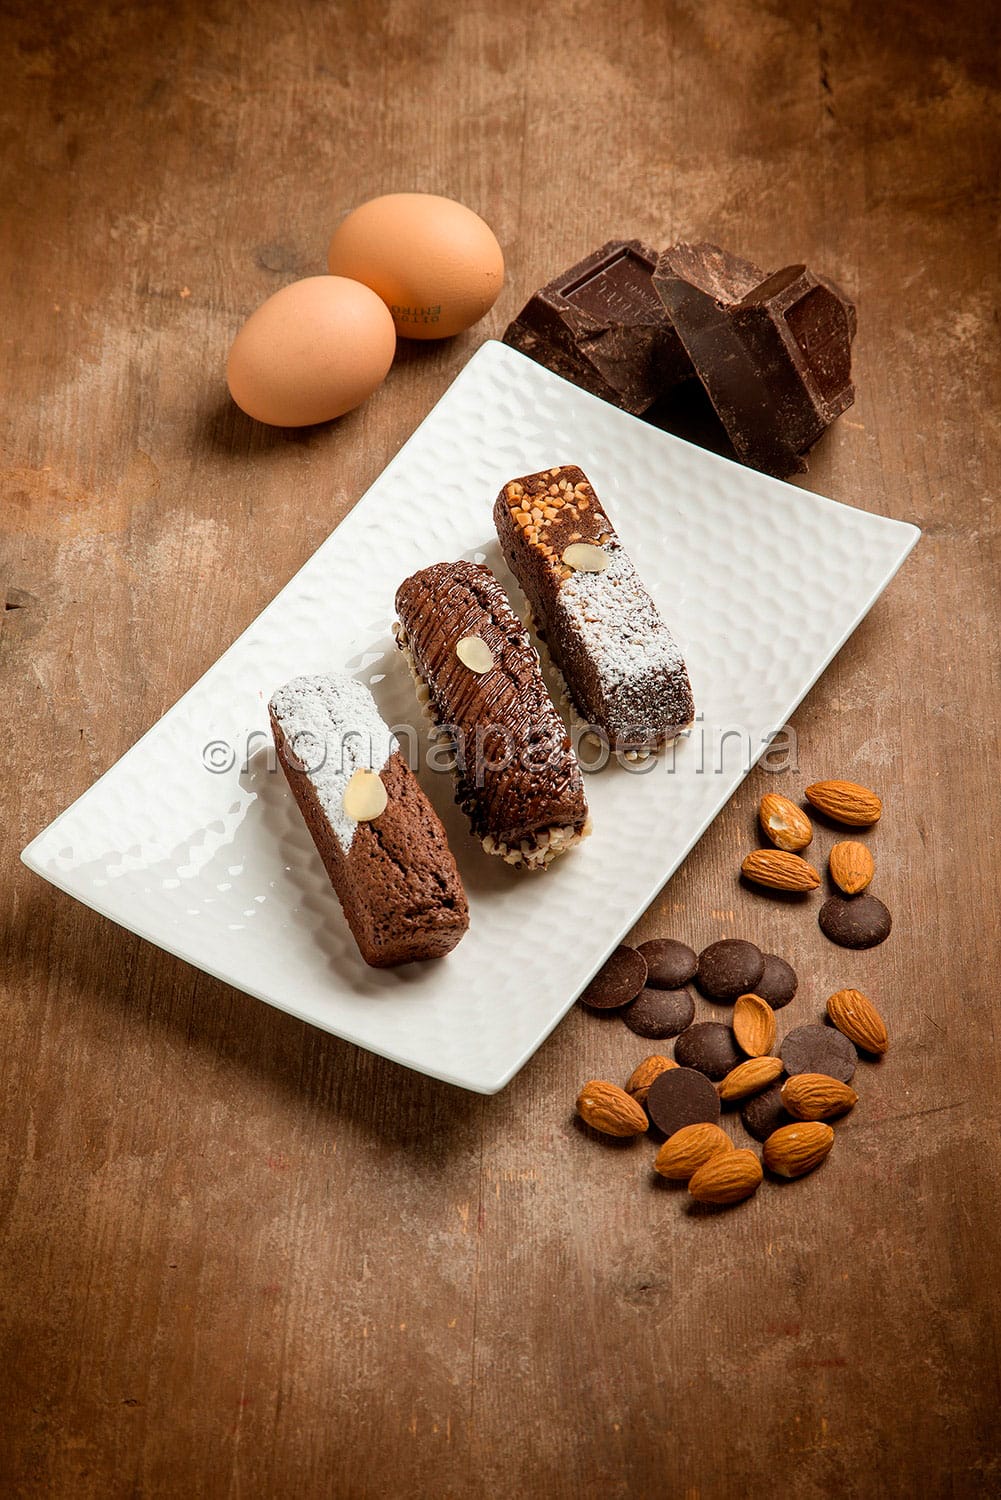 Brownies al cioccolato fondente